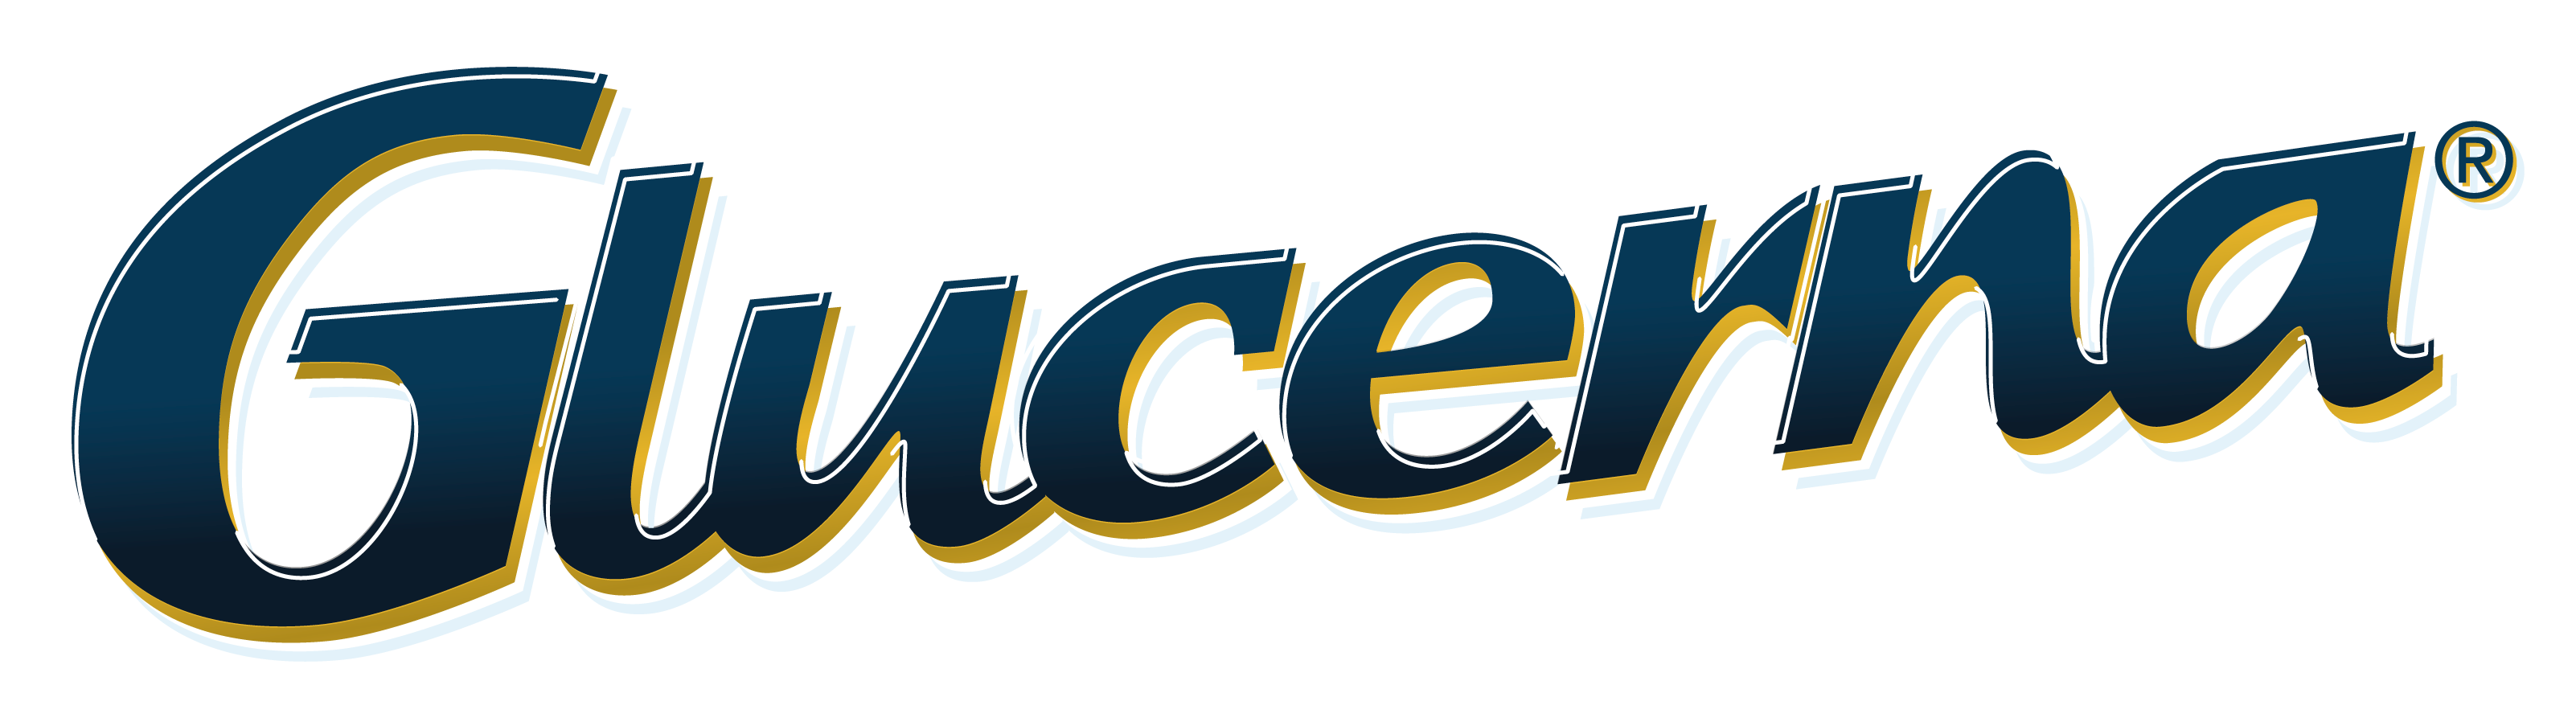 Glucerna_Logo